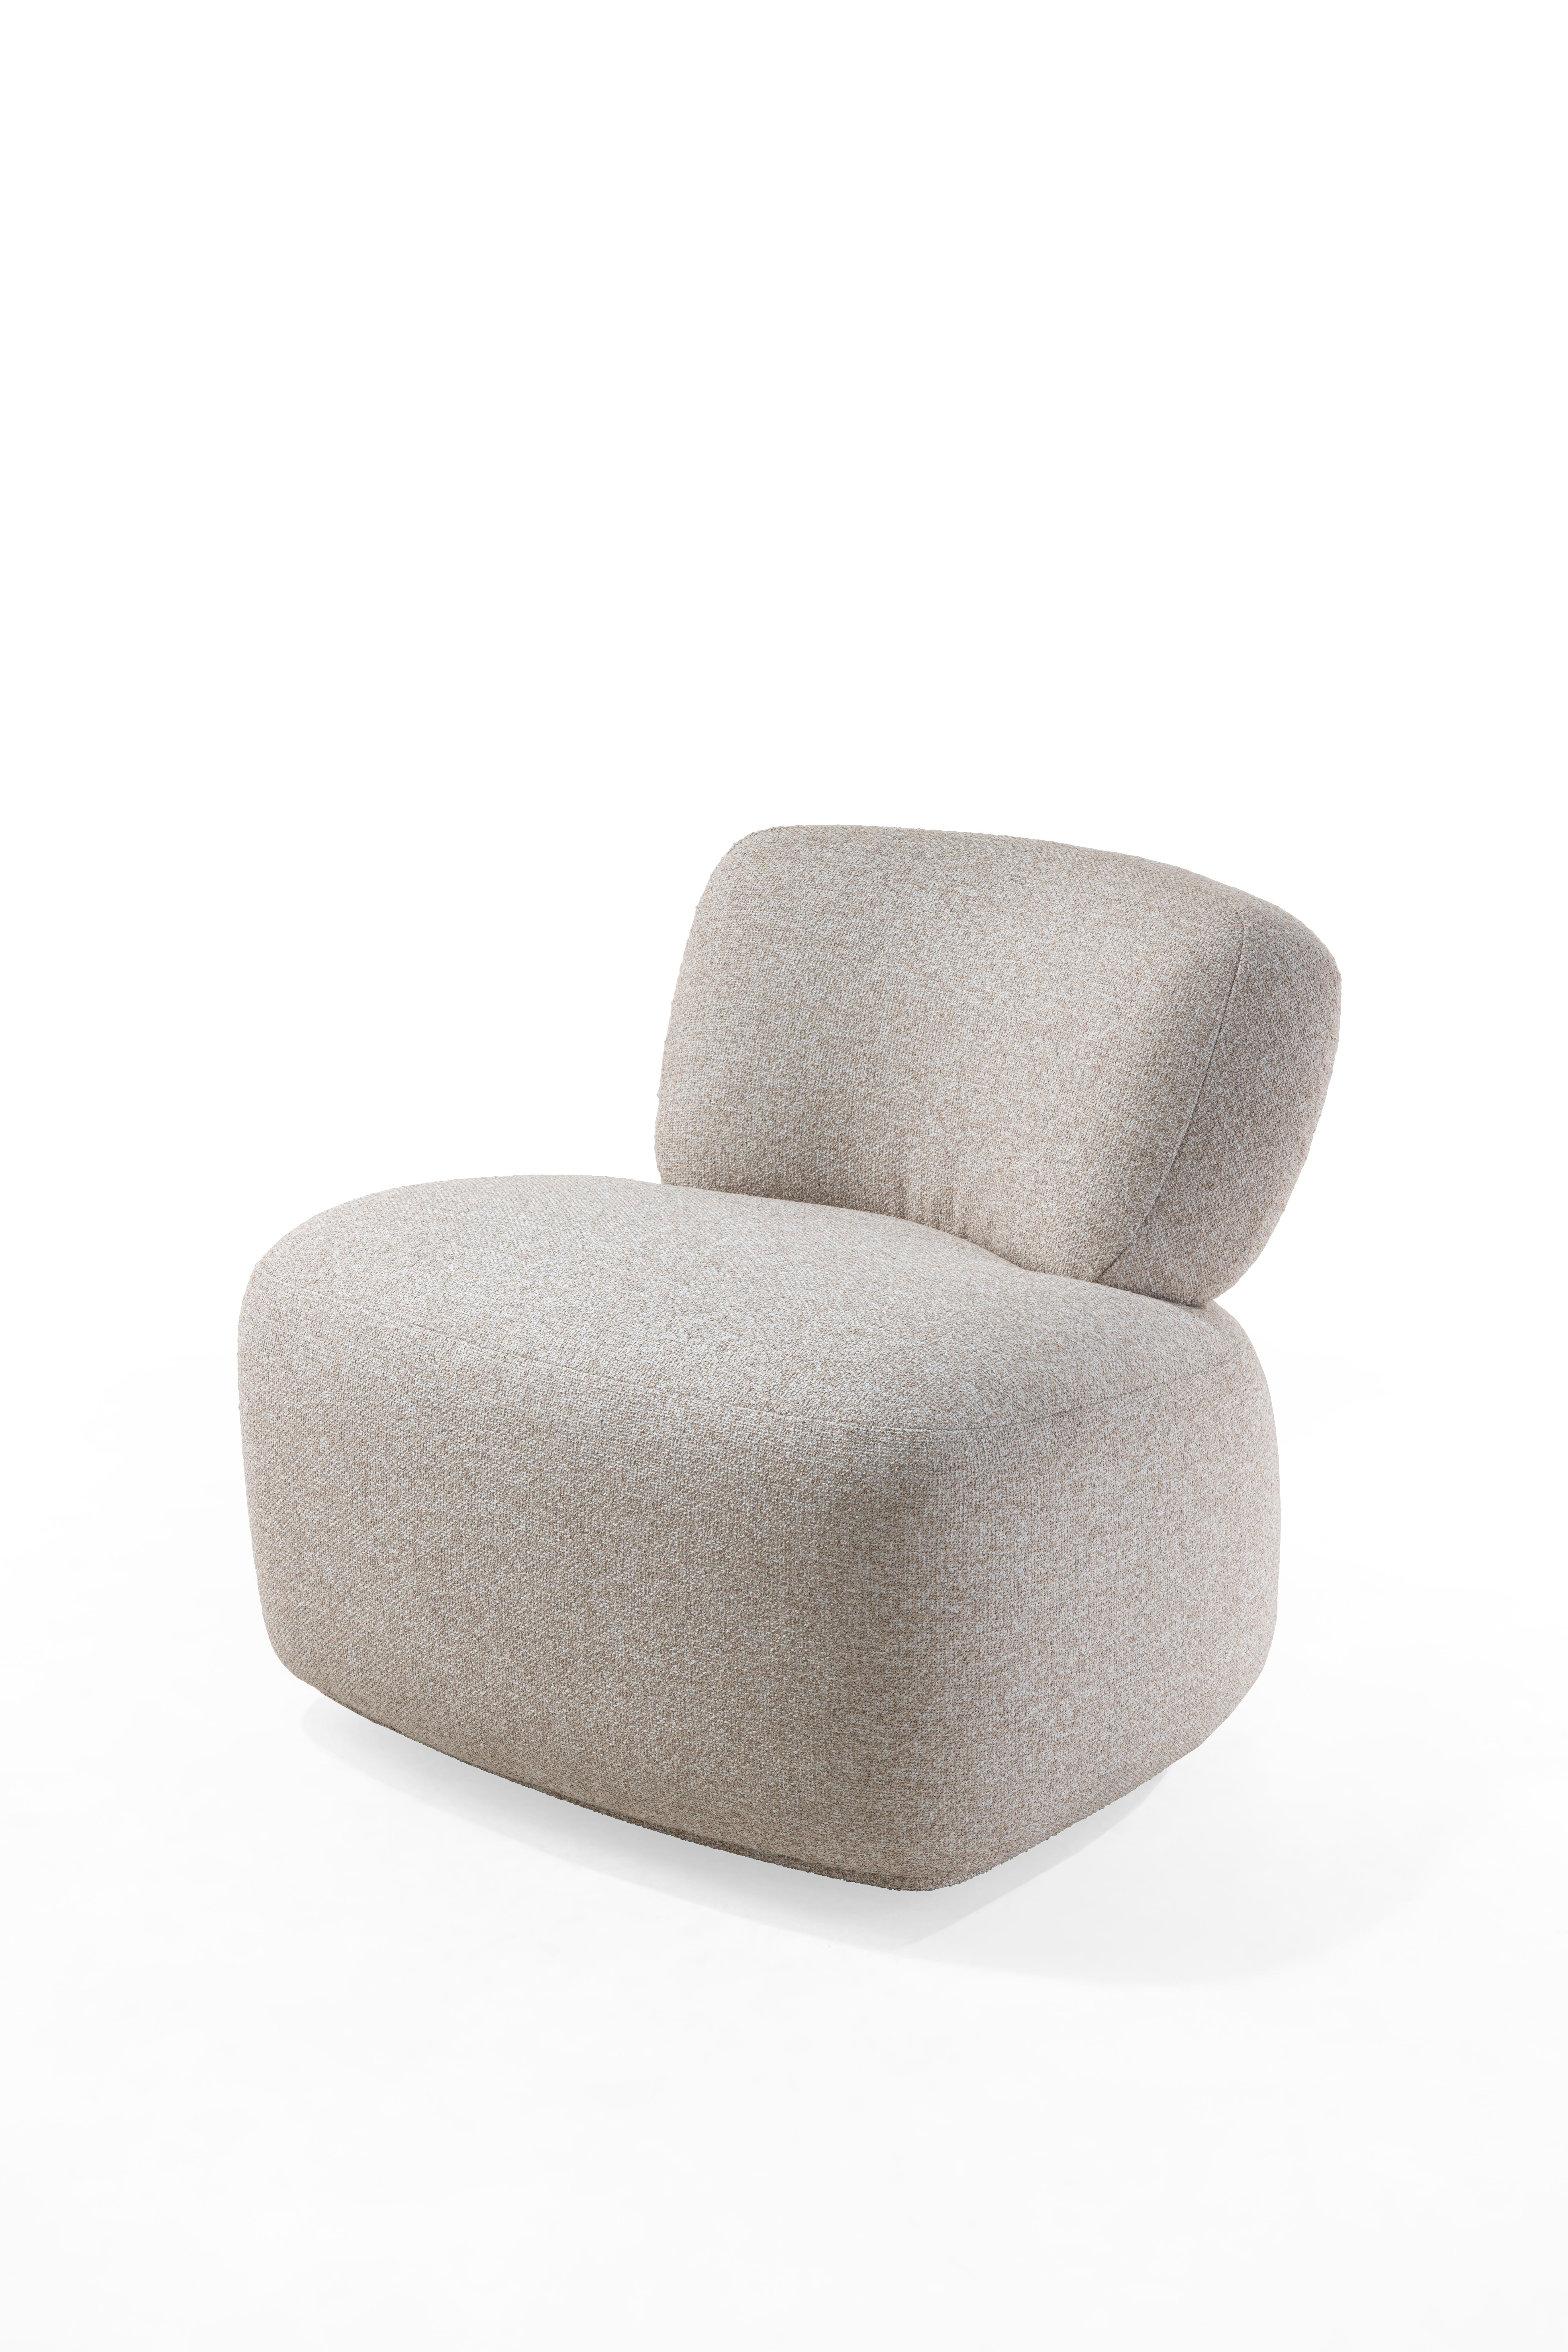 Mit seinen sanften Kurven passt dieser moderne Sessel mit Drehfuß in jeden Raum, ob Büro, Schlafzimmer oder Wohnzimmer. Das Messingdetail auf der Rückseite verleiht Ihrer Inneneinrichtung einen Hauch von Raffinesse und Glamour.

YETO kann mit Stoff